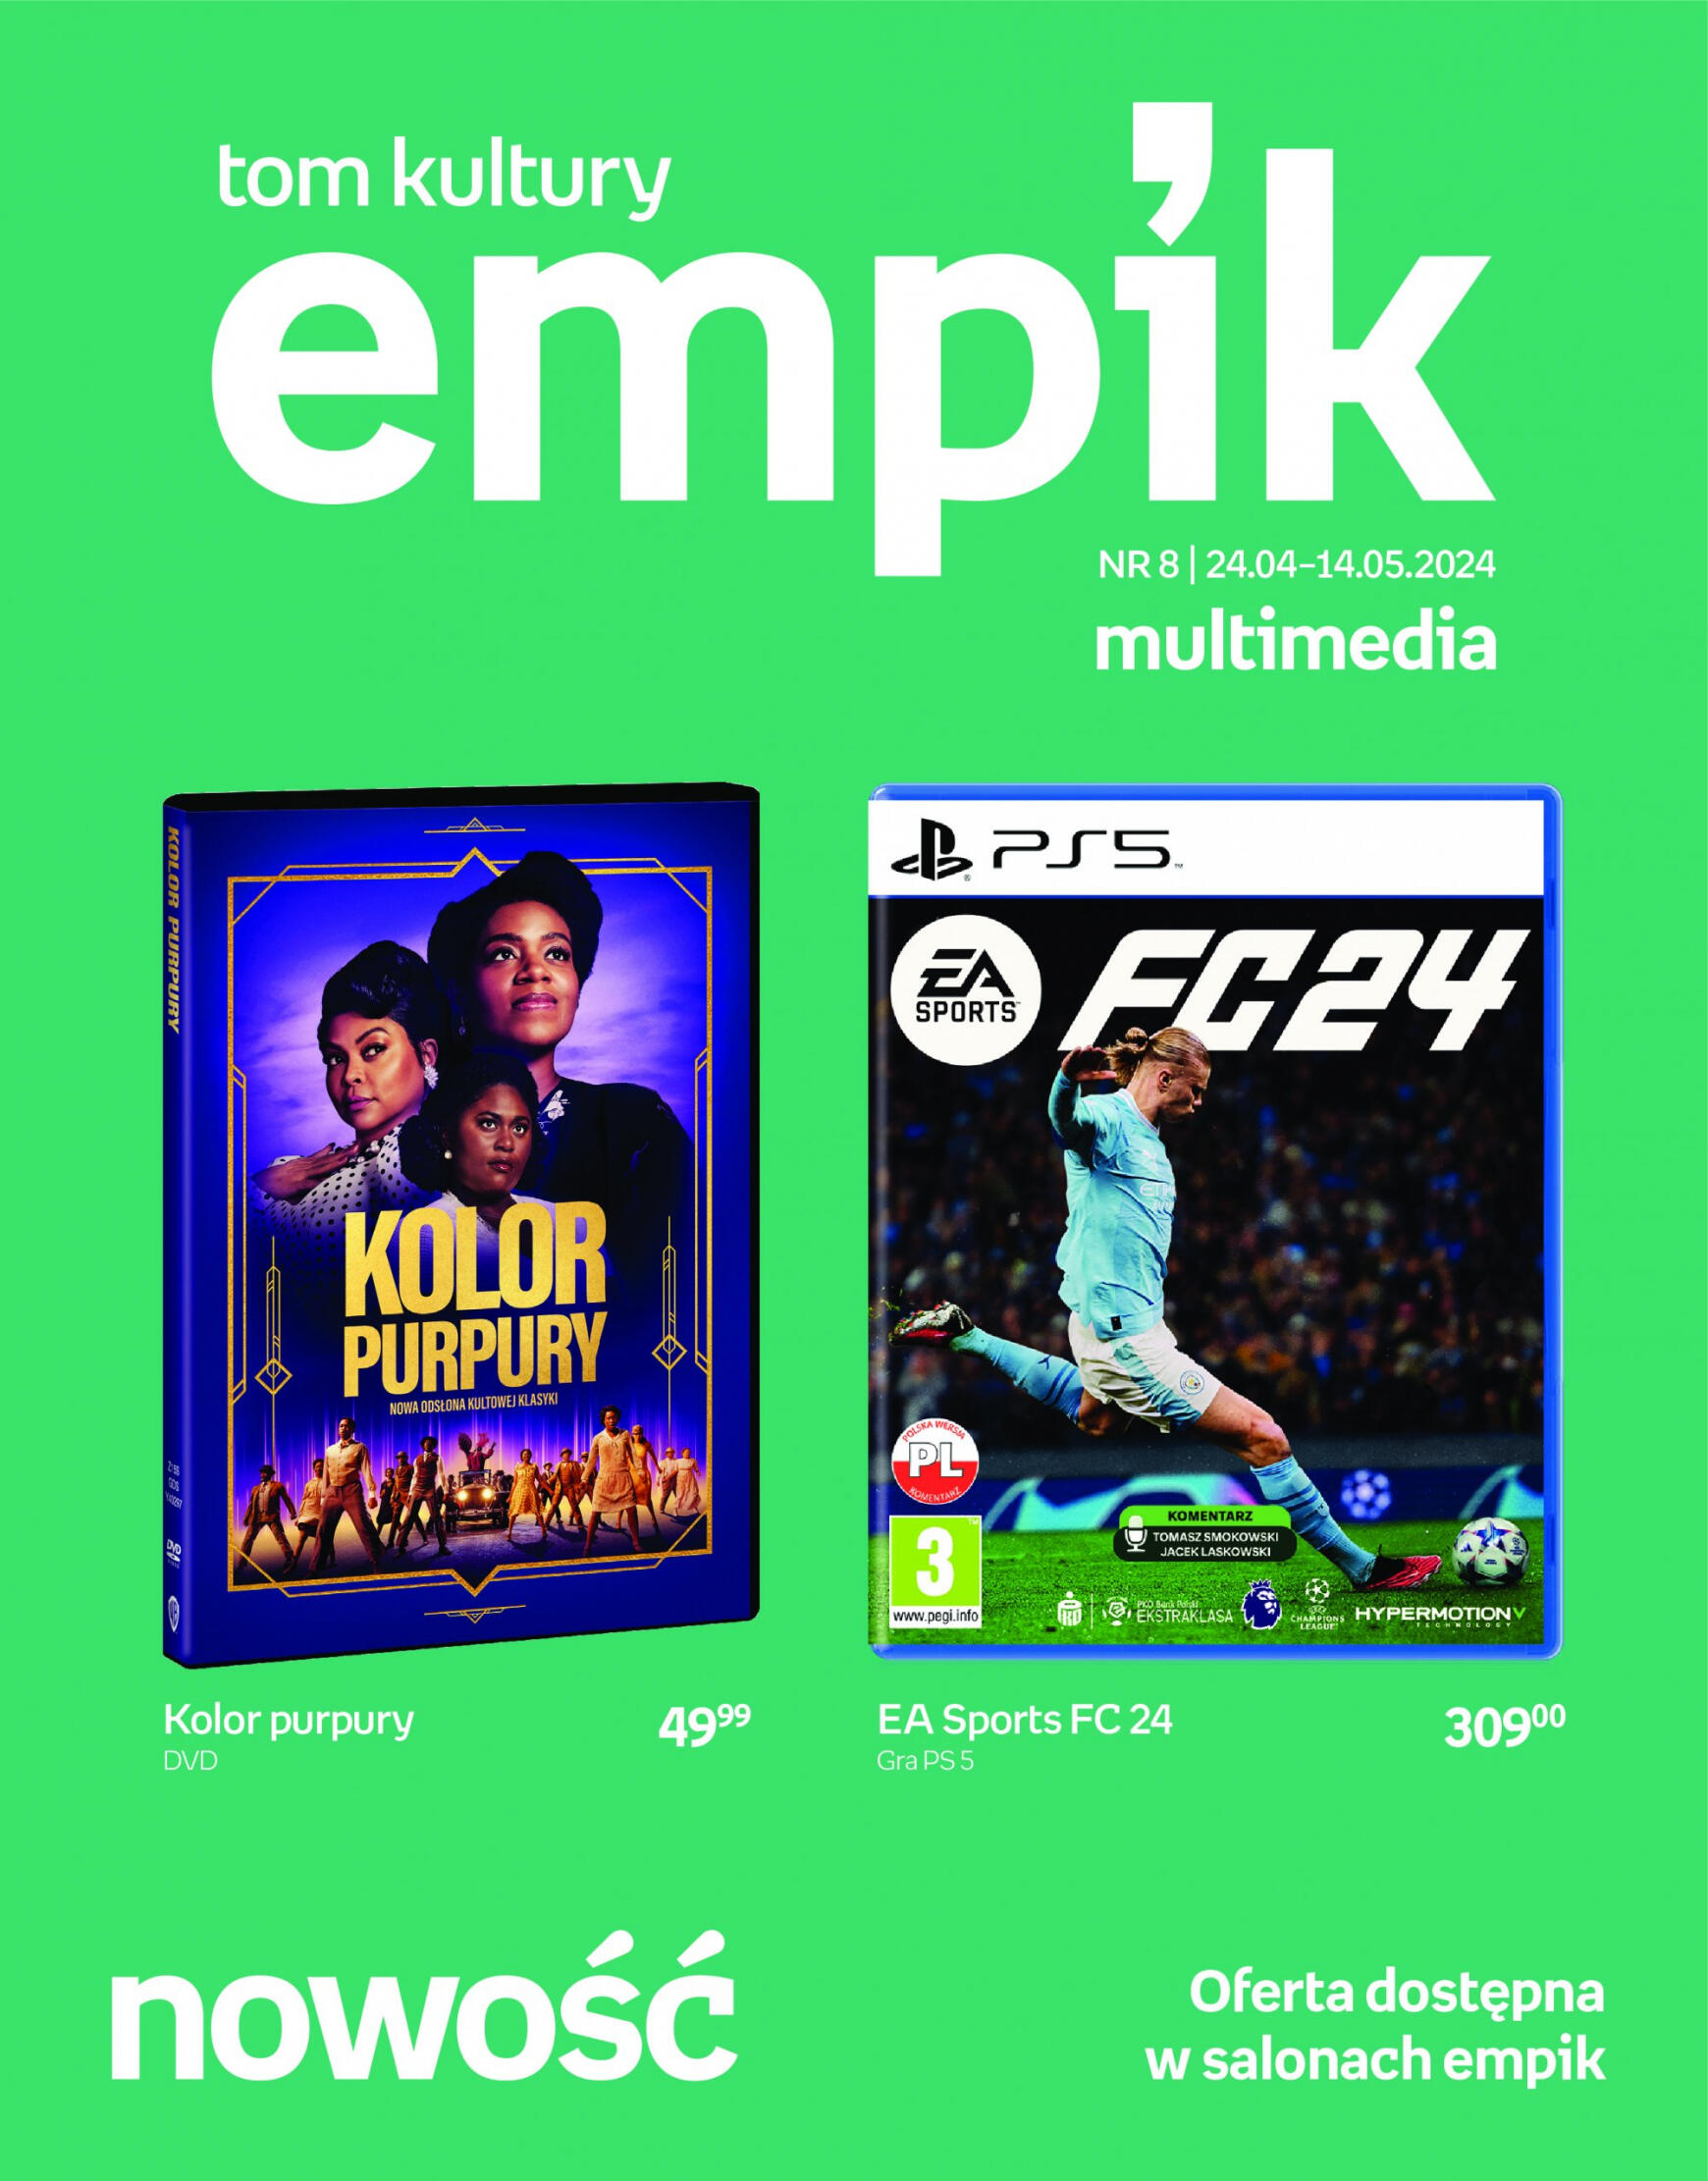 empik - Empik - Multimedia gazetka aktualna ważna od 24.04. - 14.05.